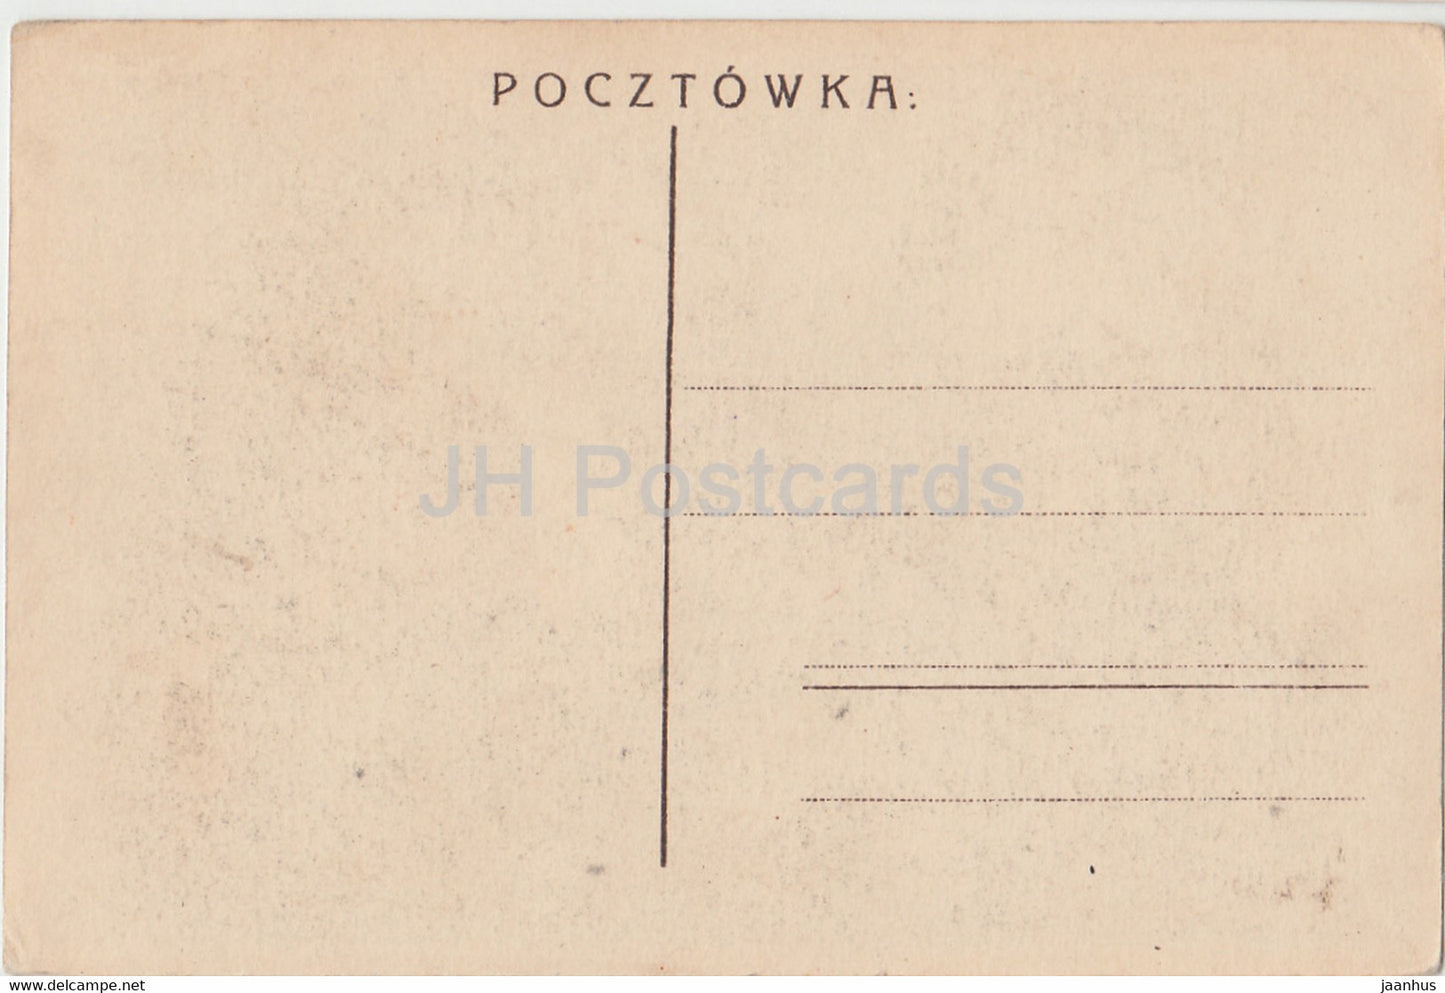 Czestochowa - Klasztor Jasnogorski - monastère - carte postale ancienne - Pologne - inutilisé